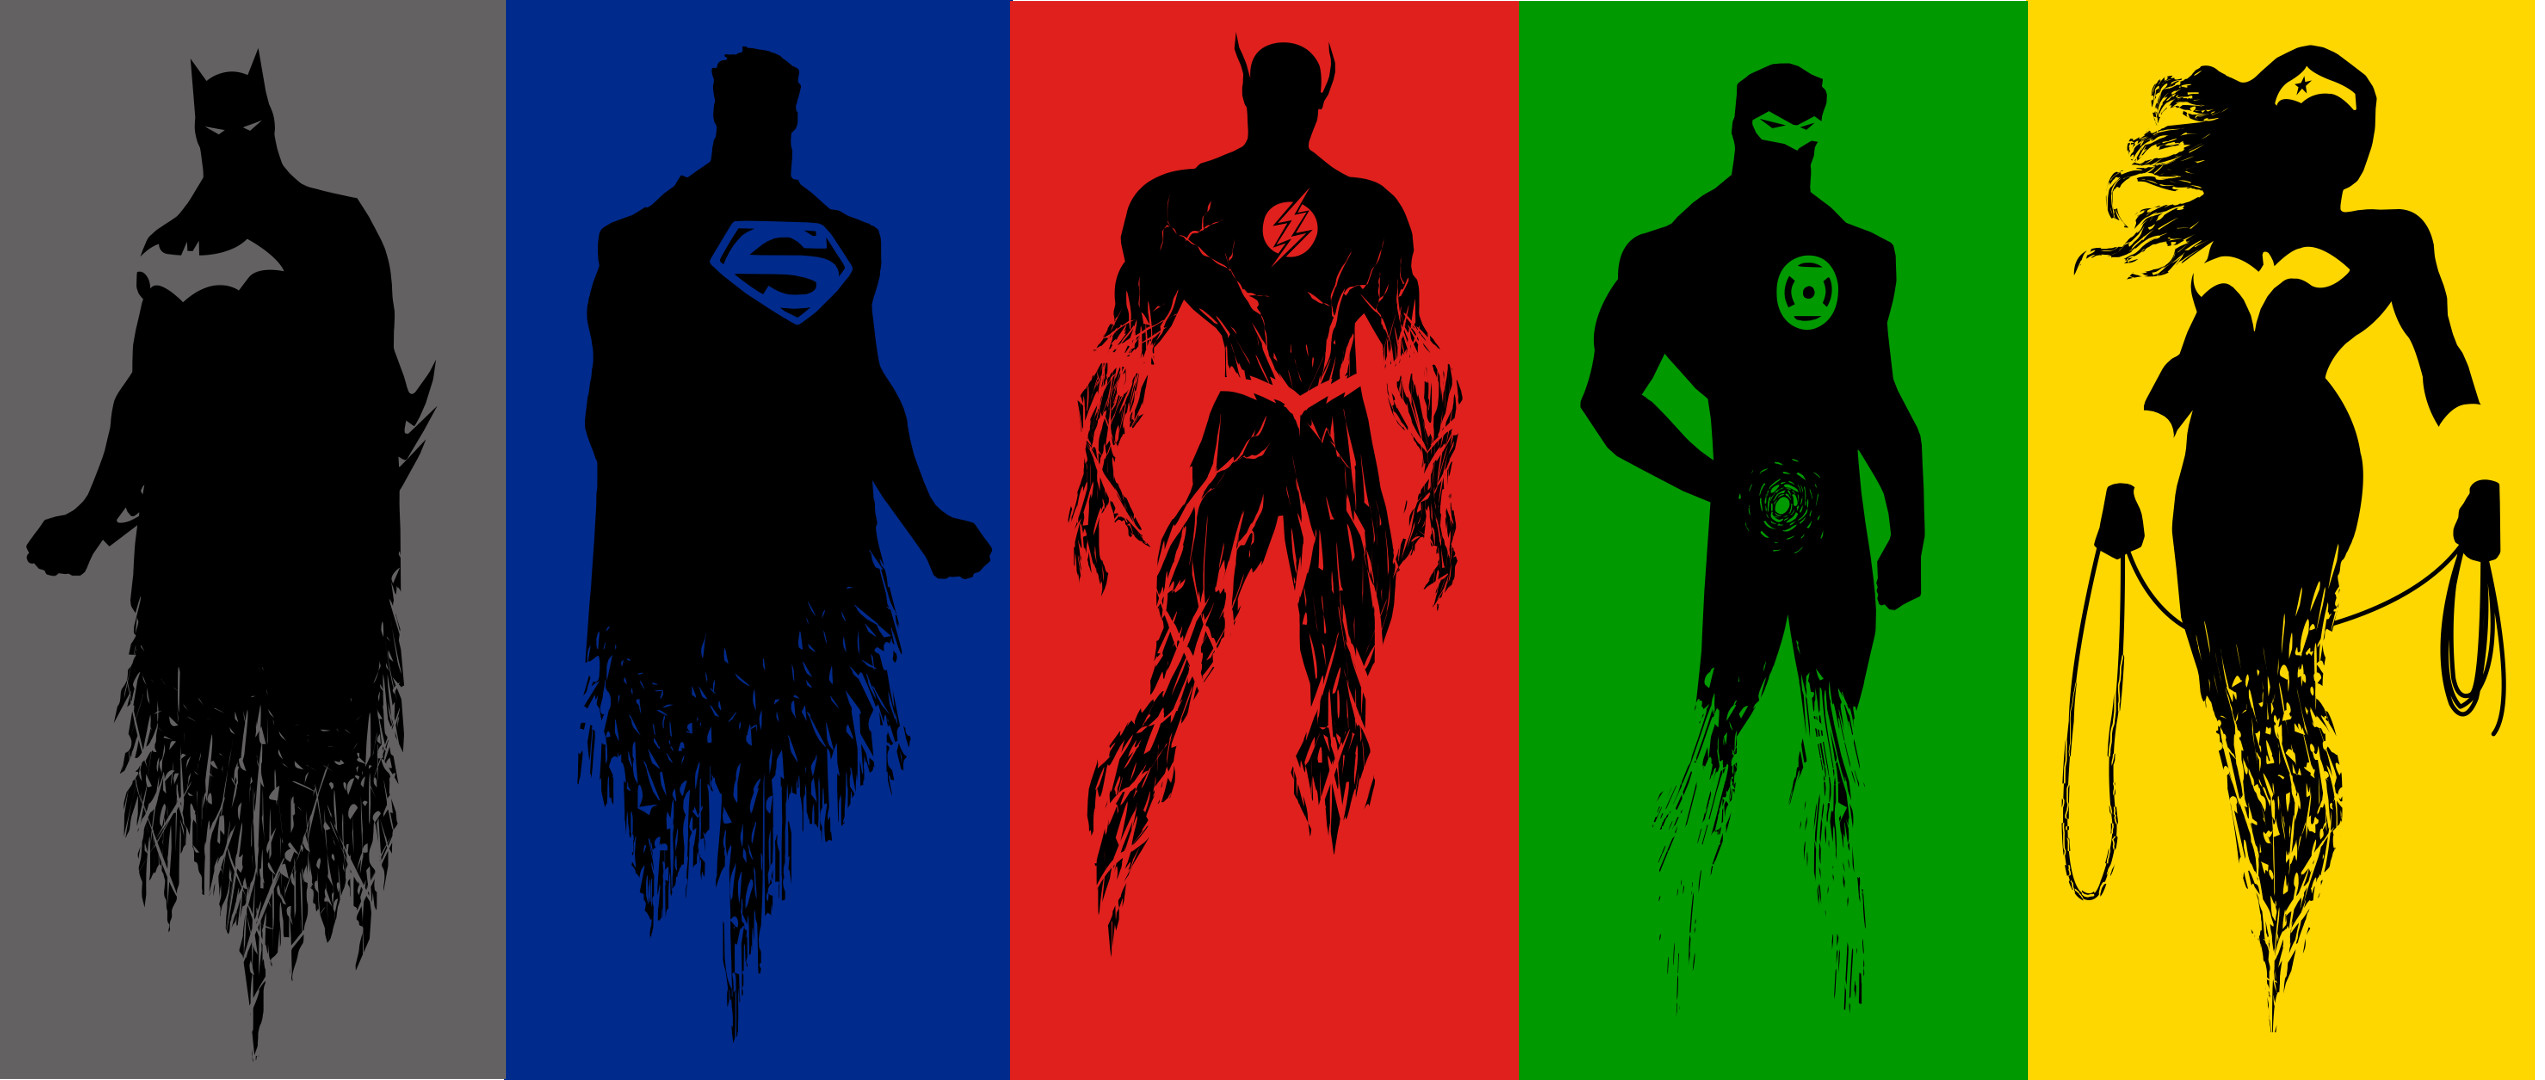 2545x1080 Batman V Superman Logo Wallpaper Up to [3840x2160] [OC] | Top reddit  wallpapers | Pinterest | Superman logo wallpaper, Superman logo and  Wallpaper